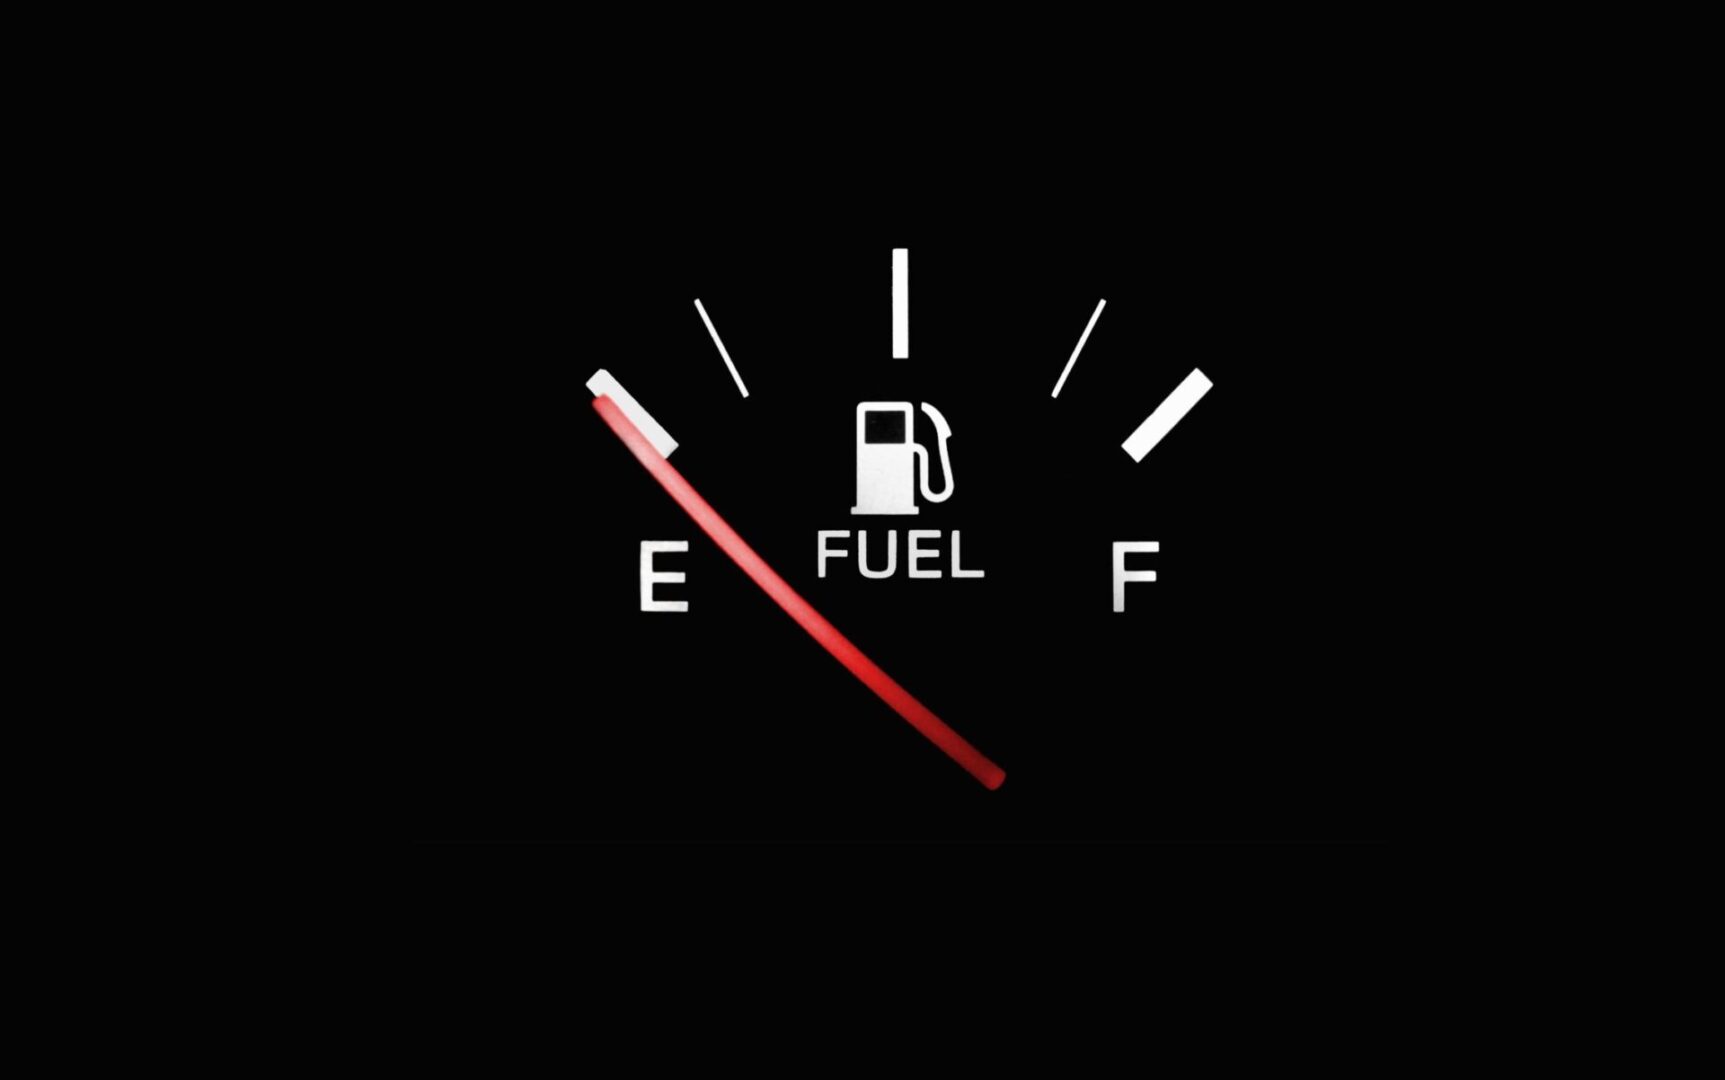 دراسة: صرفية الوقود في السيارات غير دقيقة 6